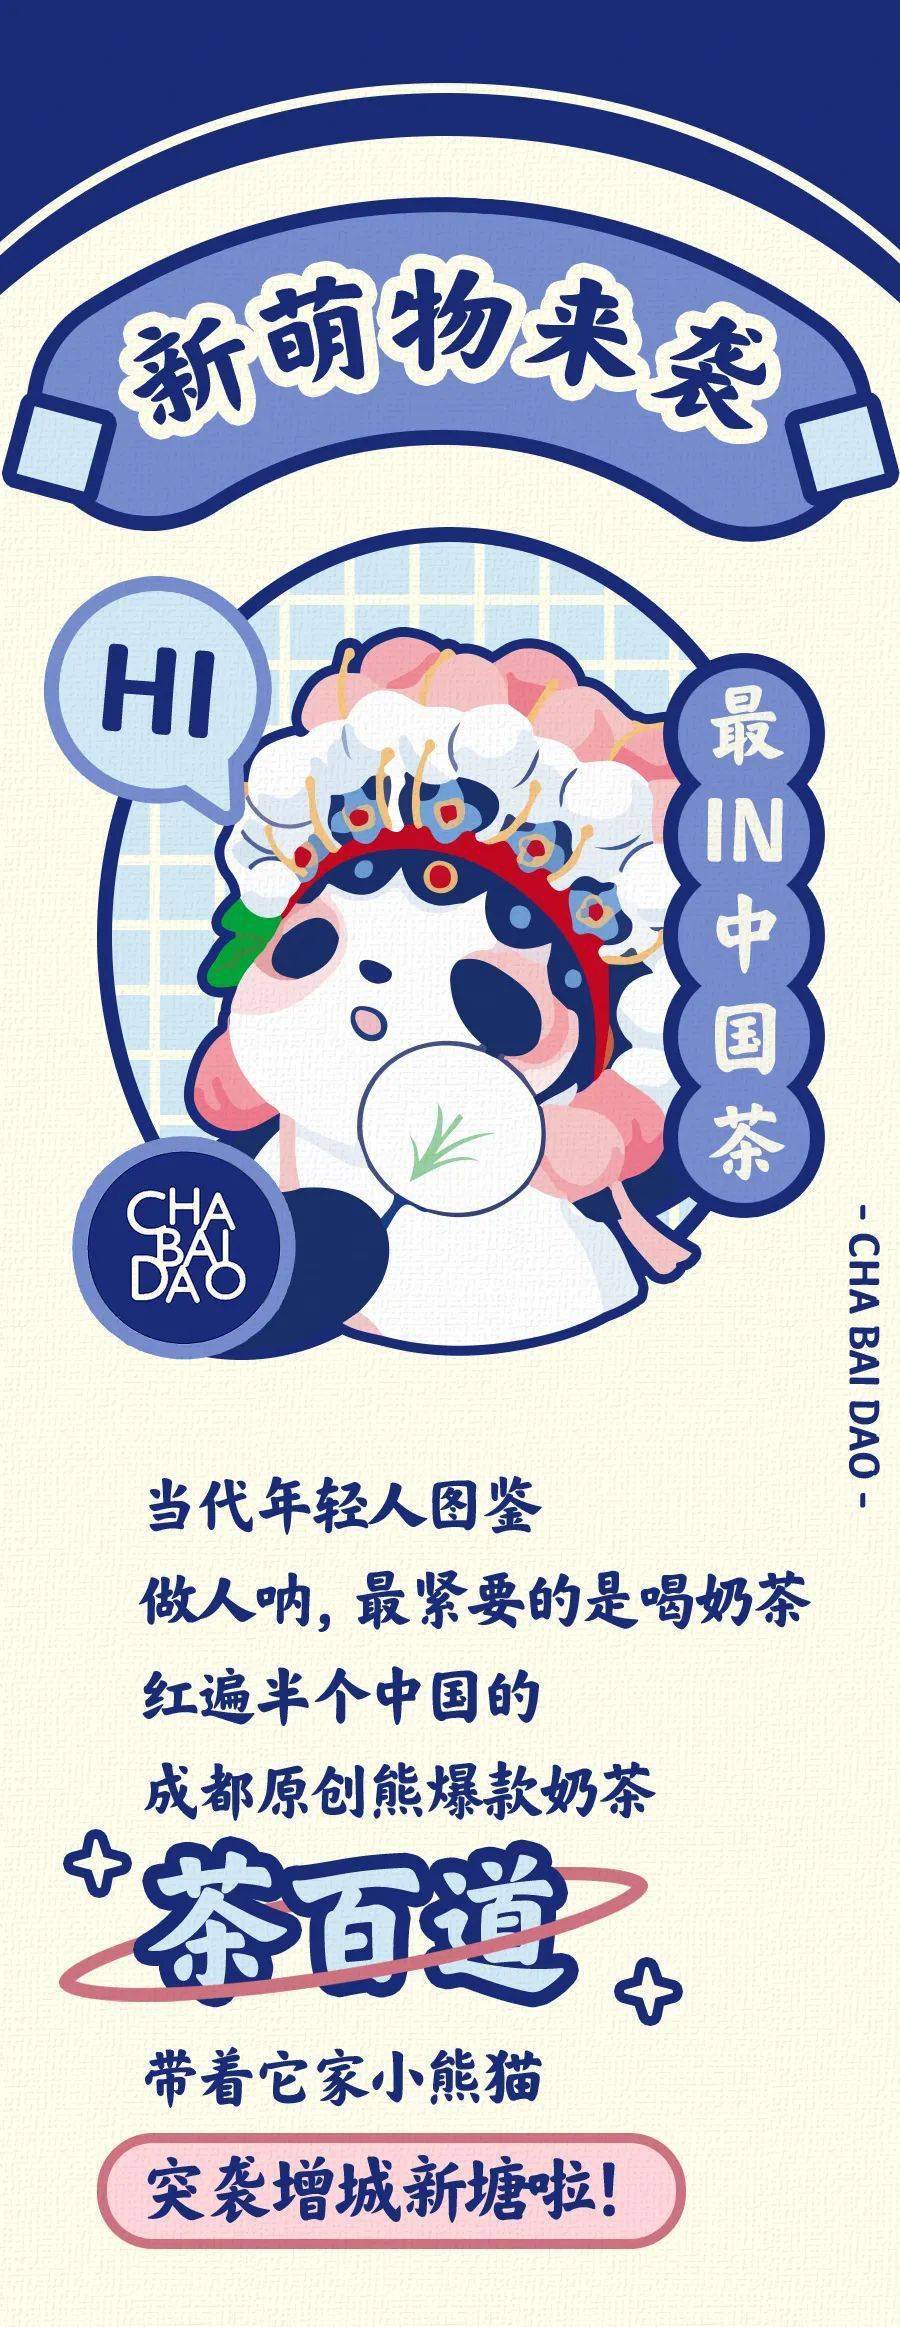 茶百道熊猫logo图片图片